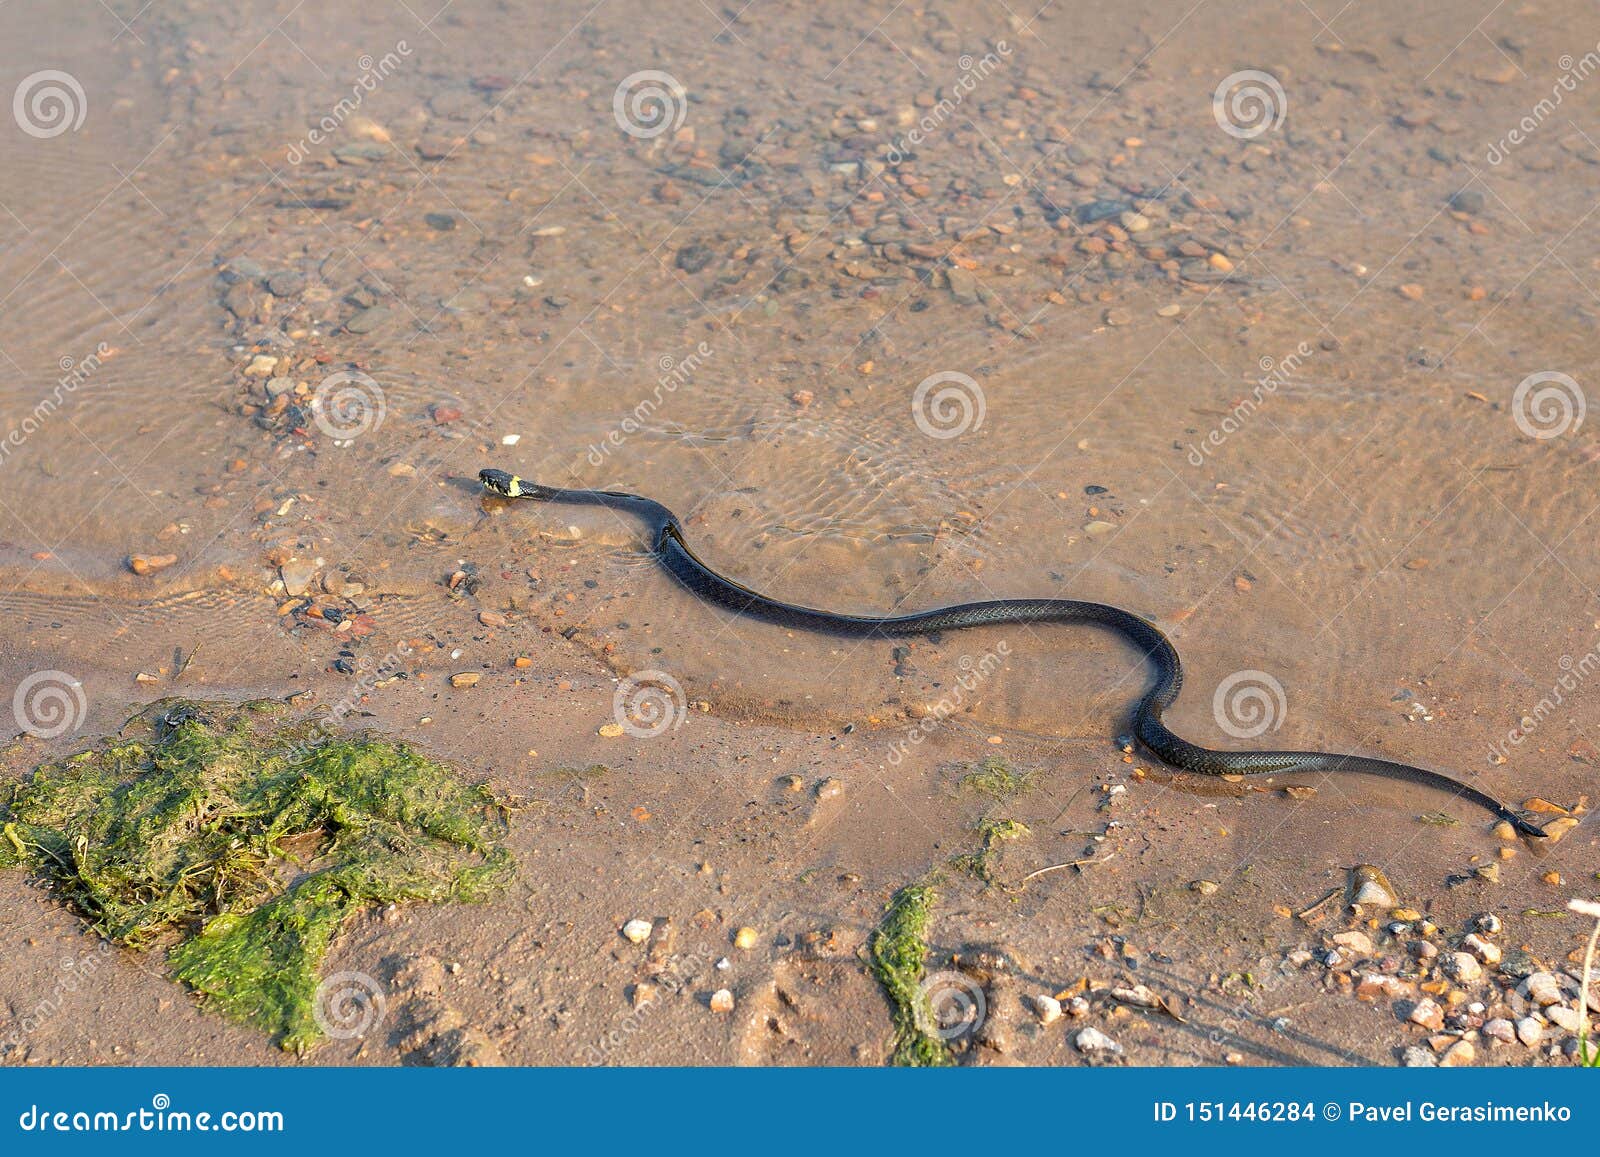 grass snake, european non-poisonous snake in natural habitat